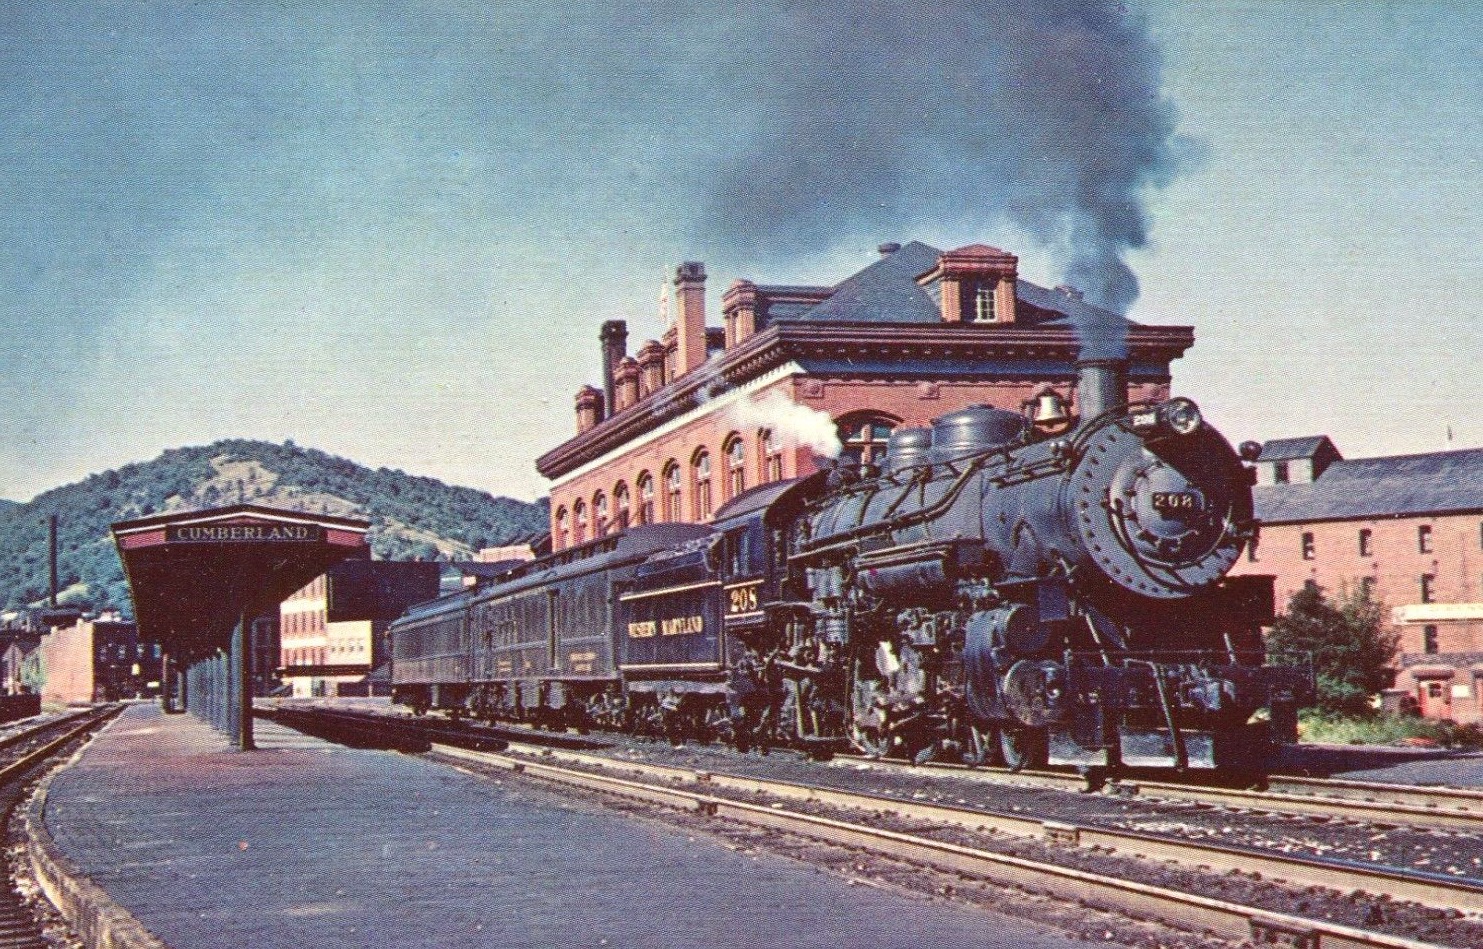 First railway. Железные дороги 19 века США. Паровоз США 19 век. Германия вокзал 19 век. ЖД станция 19 век США.